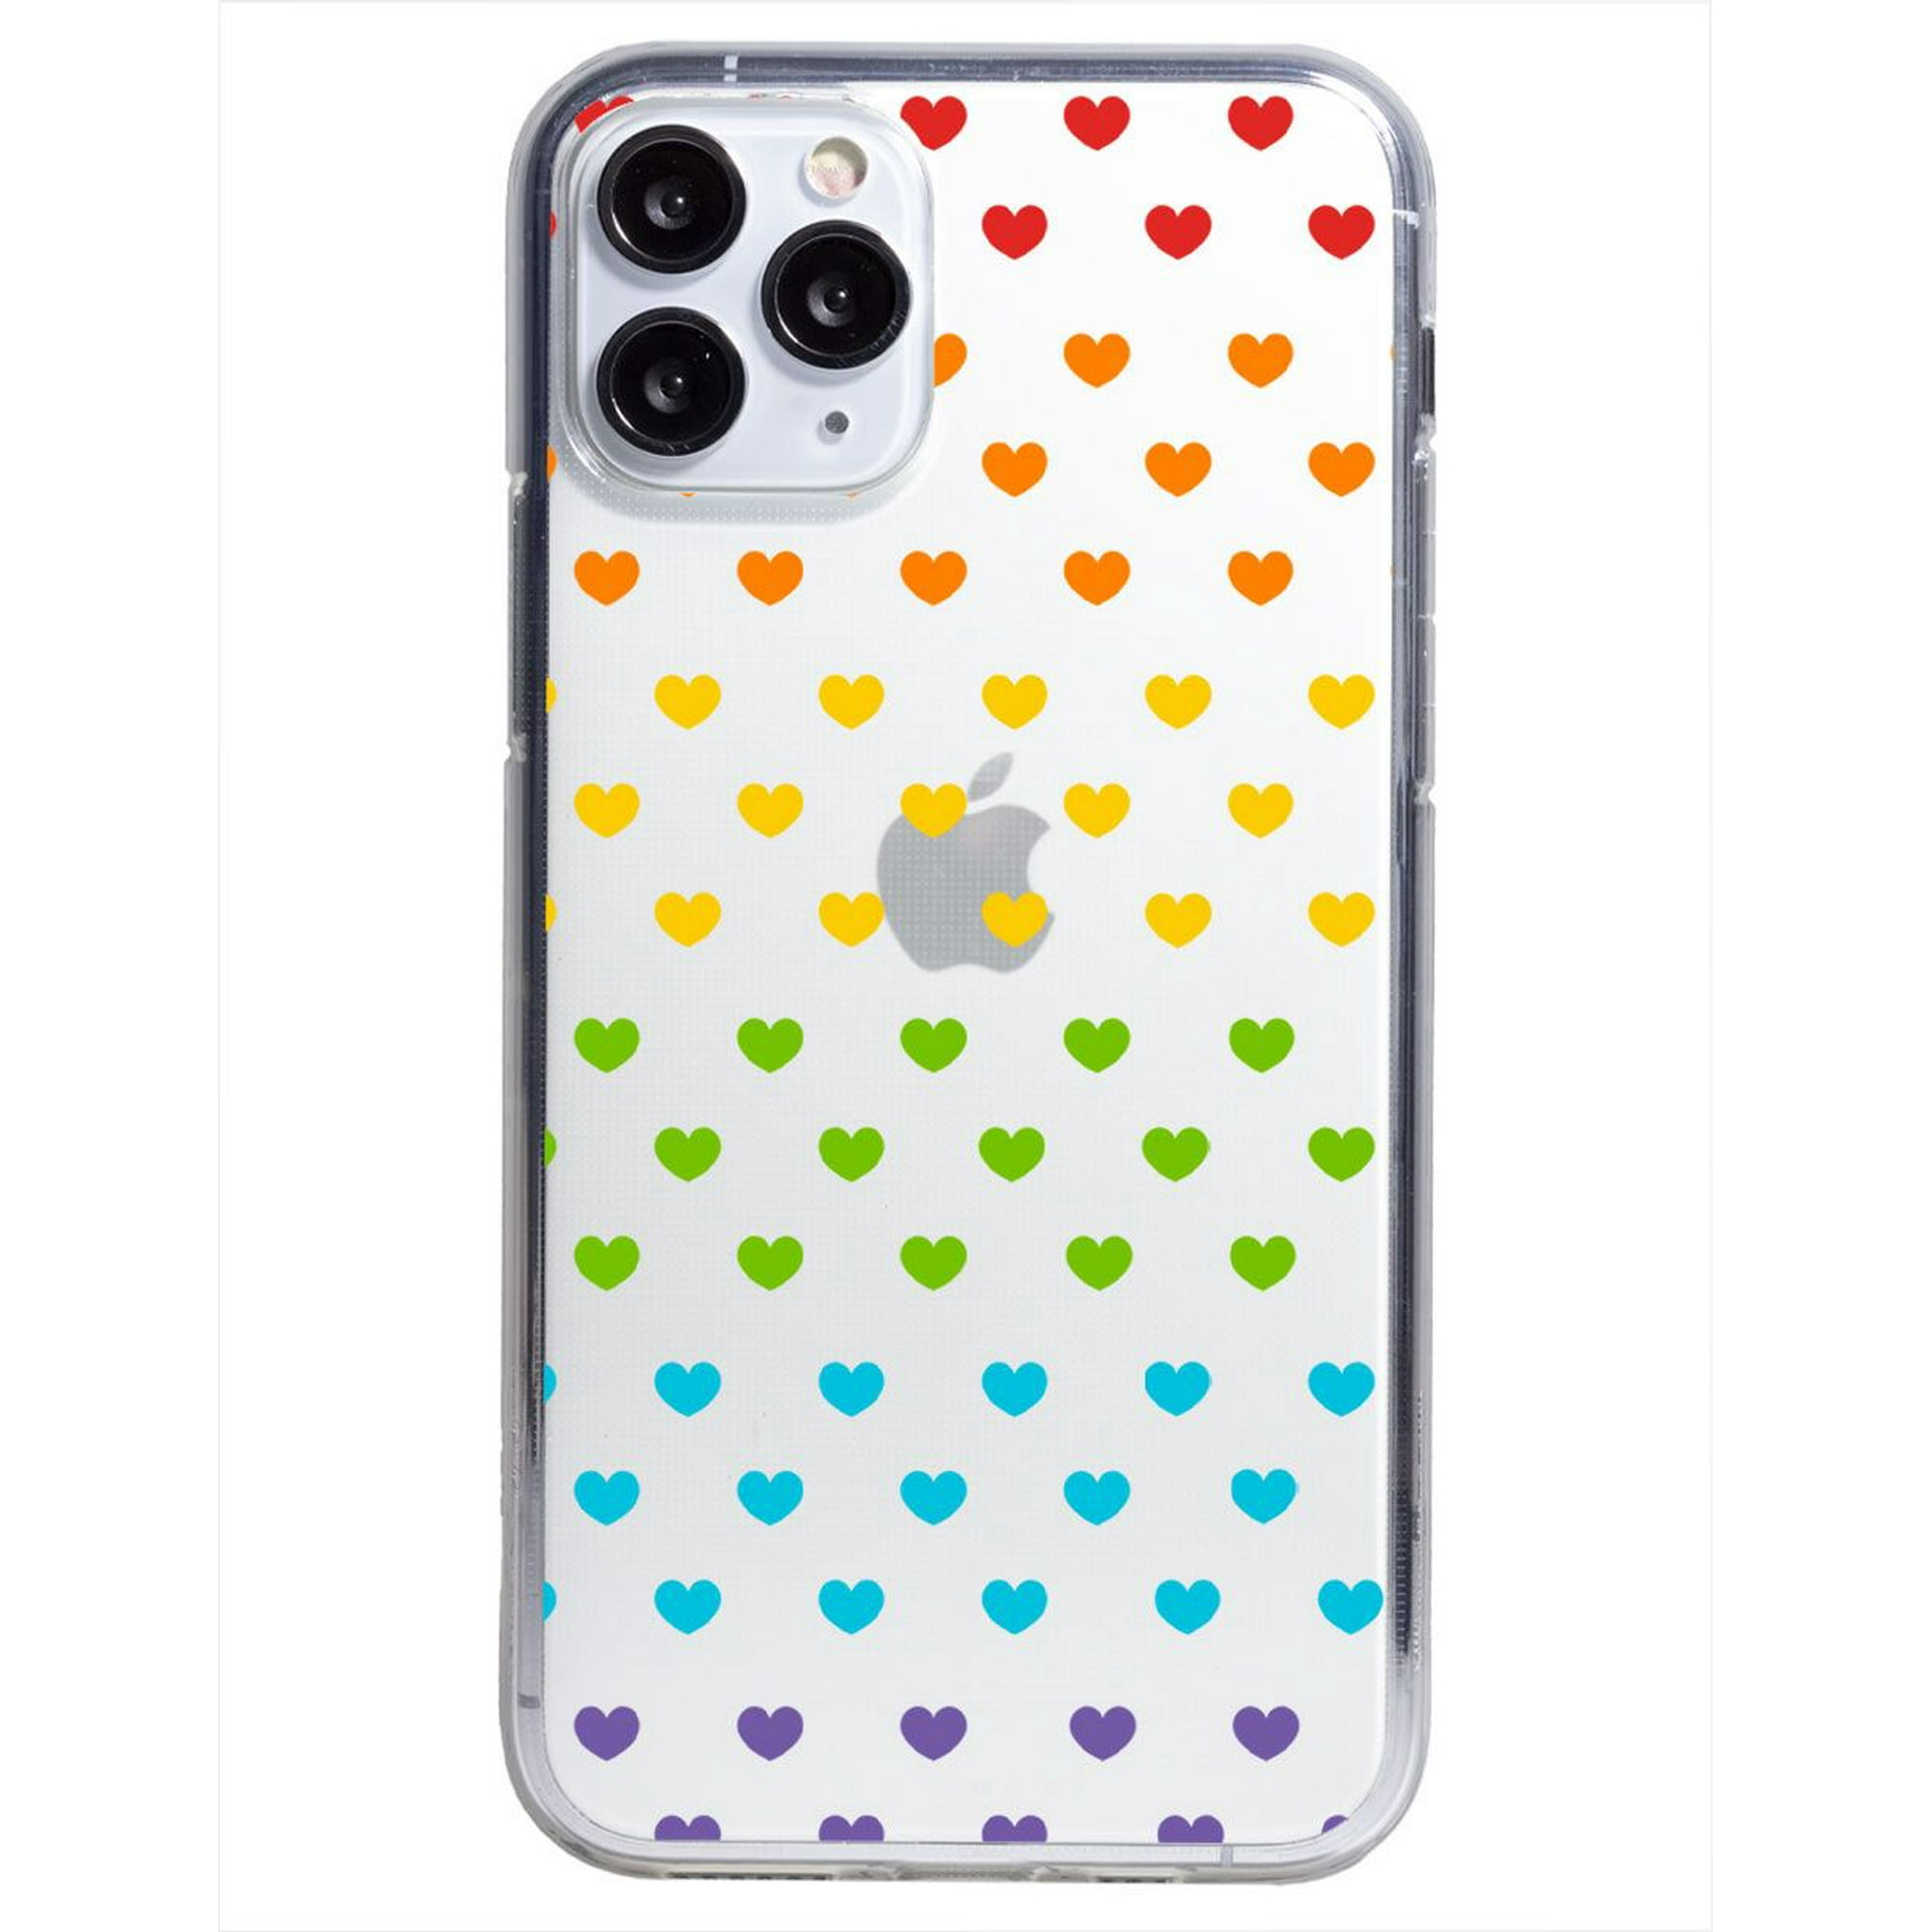 Funda para iphone 11 pro max corazones colores, uso rudo, instacase protector para iphone 11 pro max antigolpes, case corazones colores